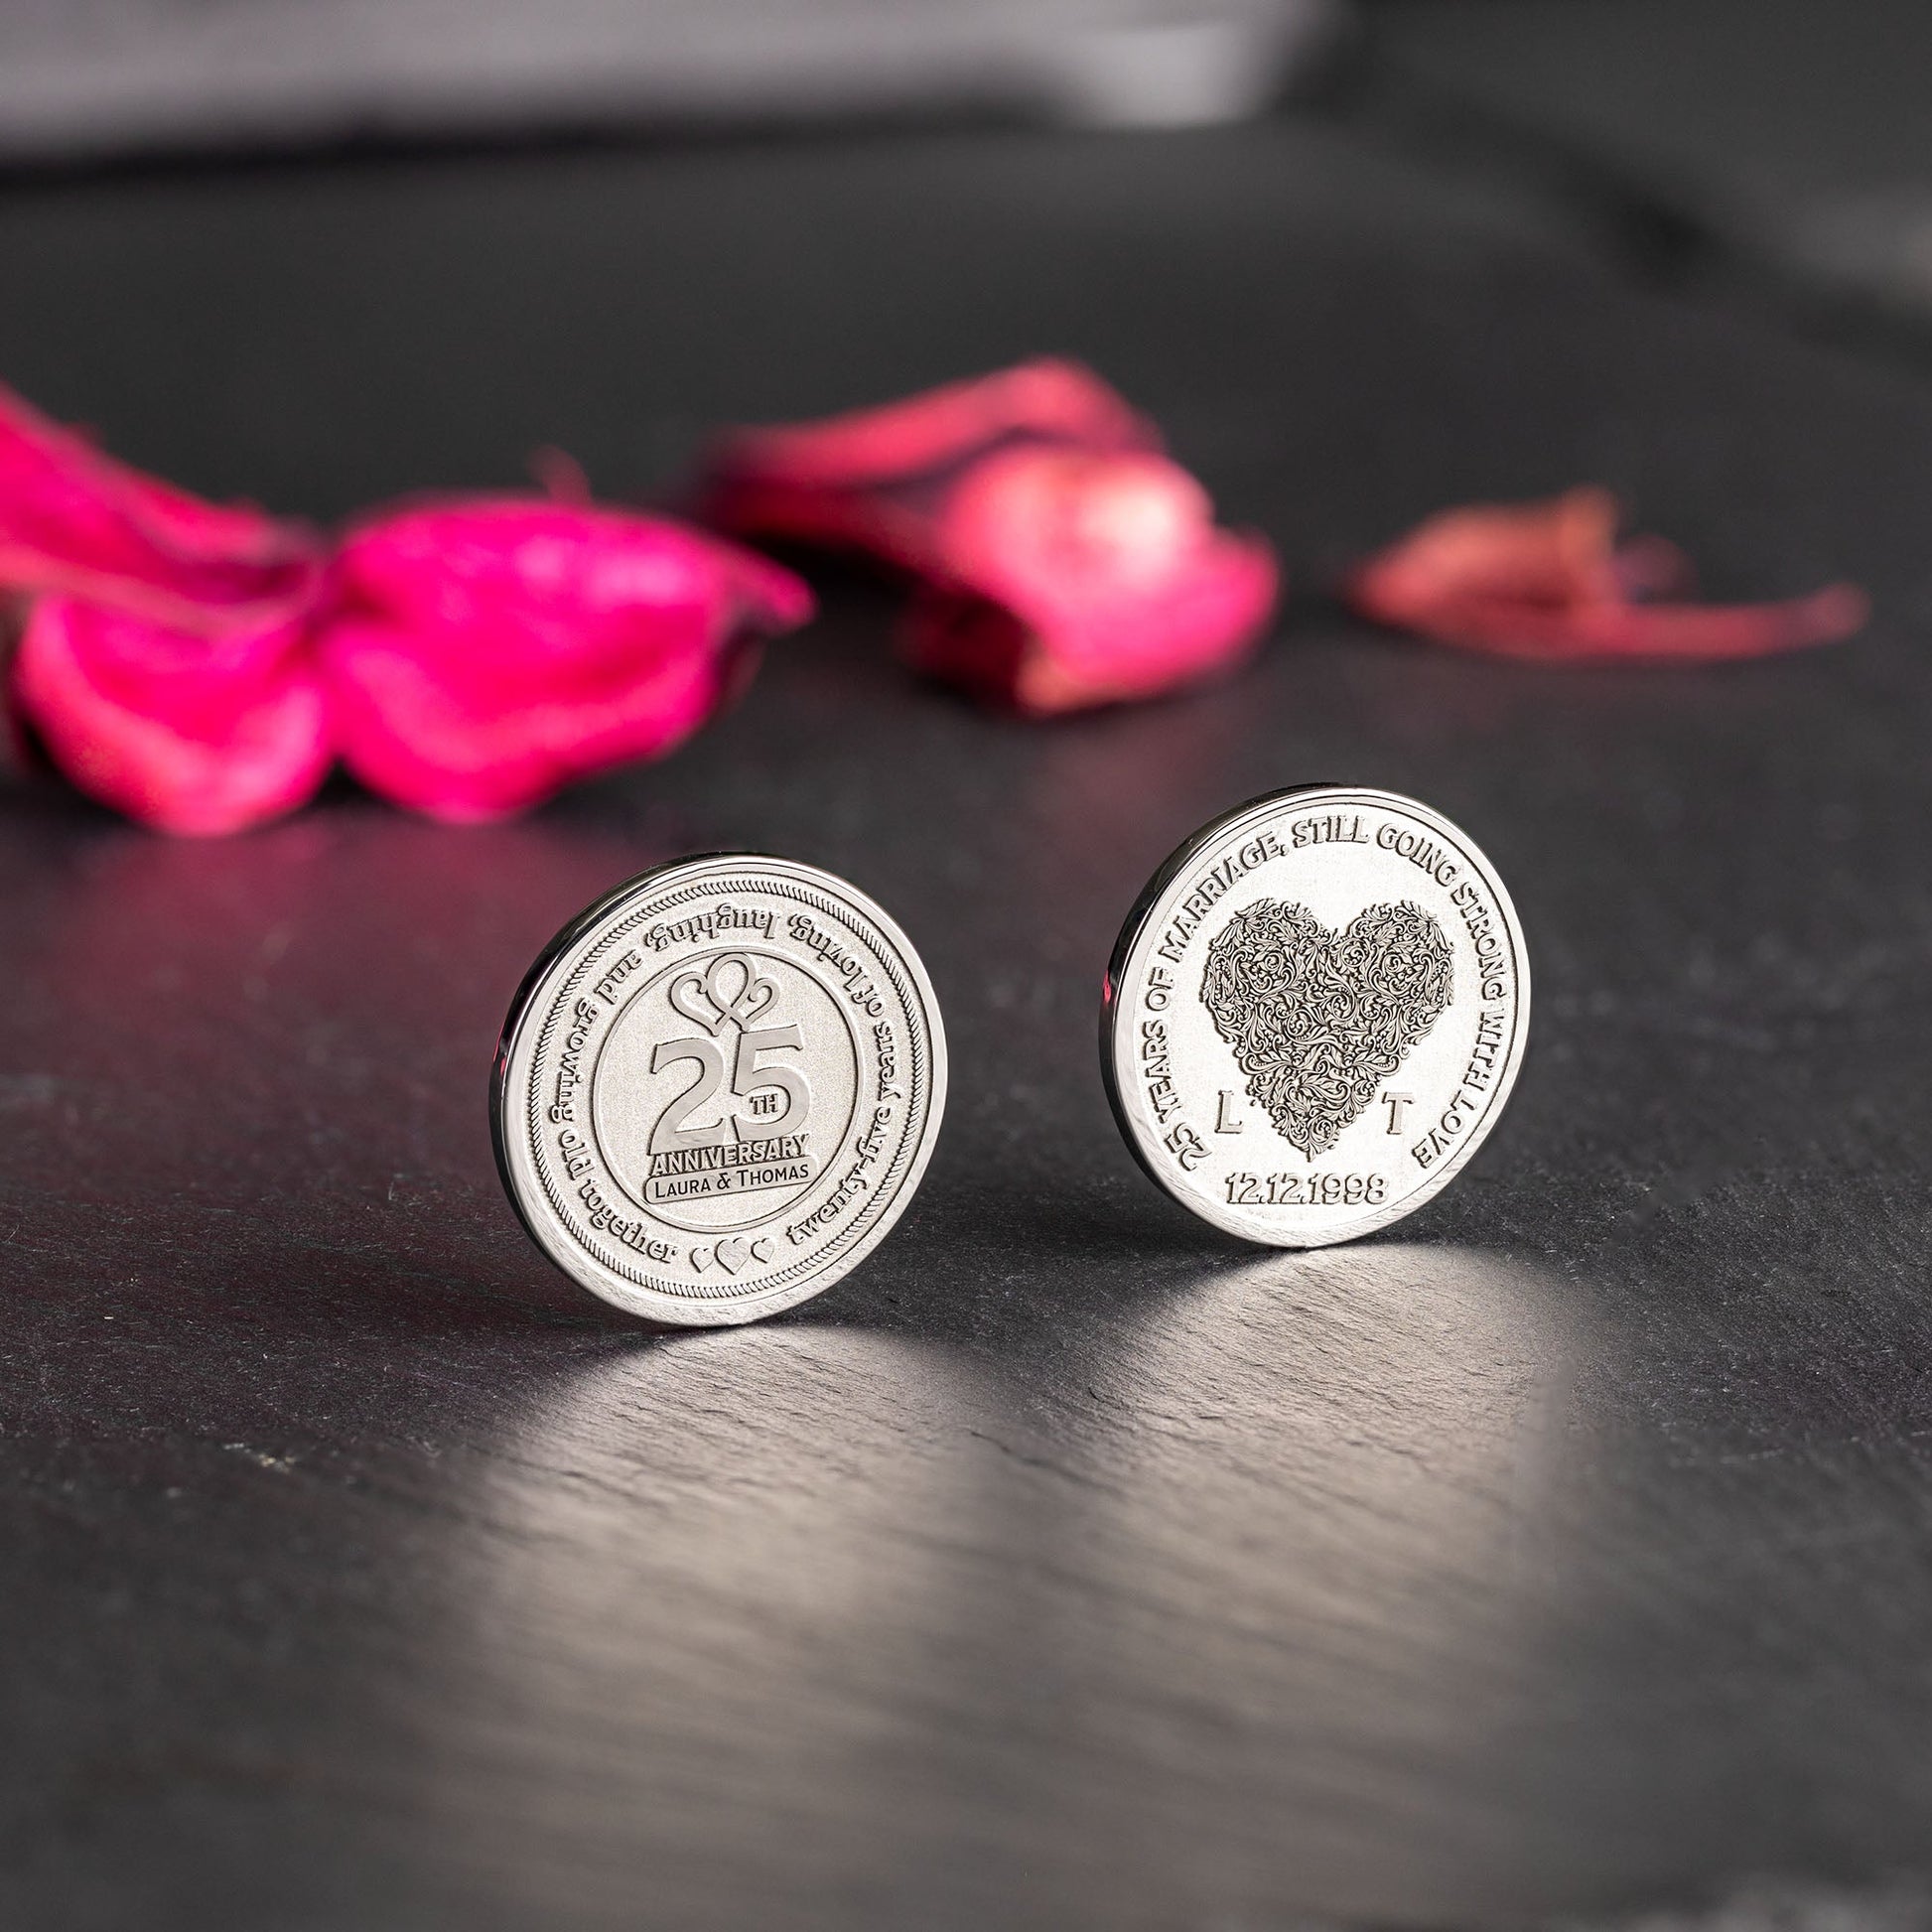 Feiern Sie ein außergewöhnliches 25-jähriges Jubiläum mit einem denkwürdigen Symbol der Liebe - unserer personalisierten Münze - seQua.Shop